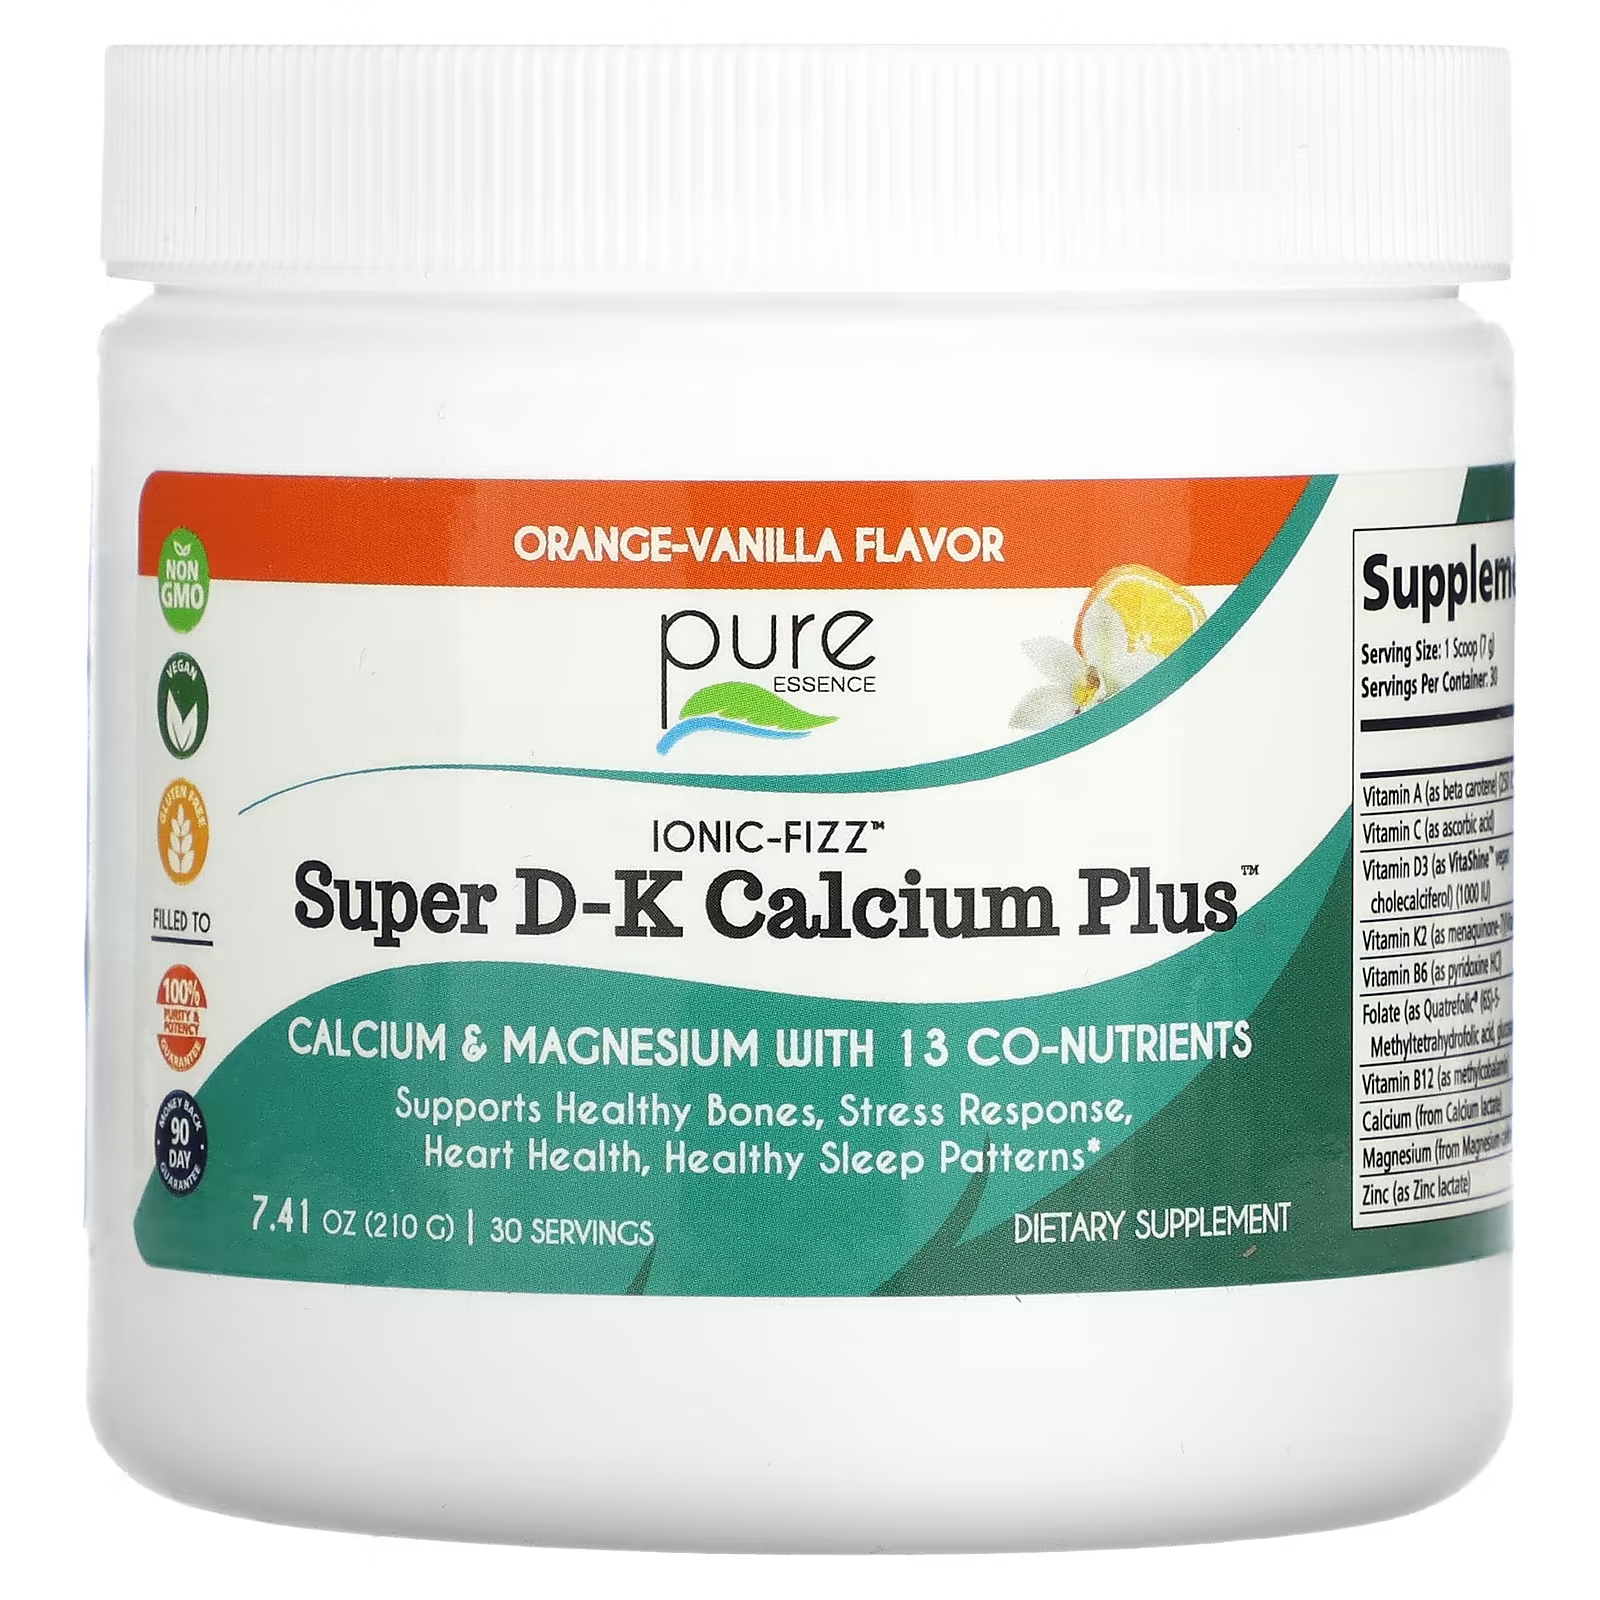 Пищевая добавка Pure Essence Ionic-Fizz Super DK Calcium Plus апельсин-ваниль, 210 г фото